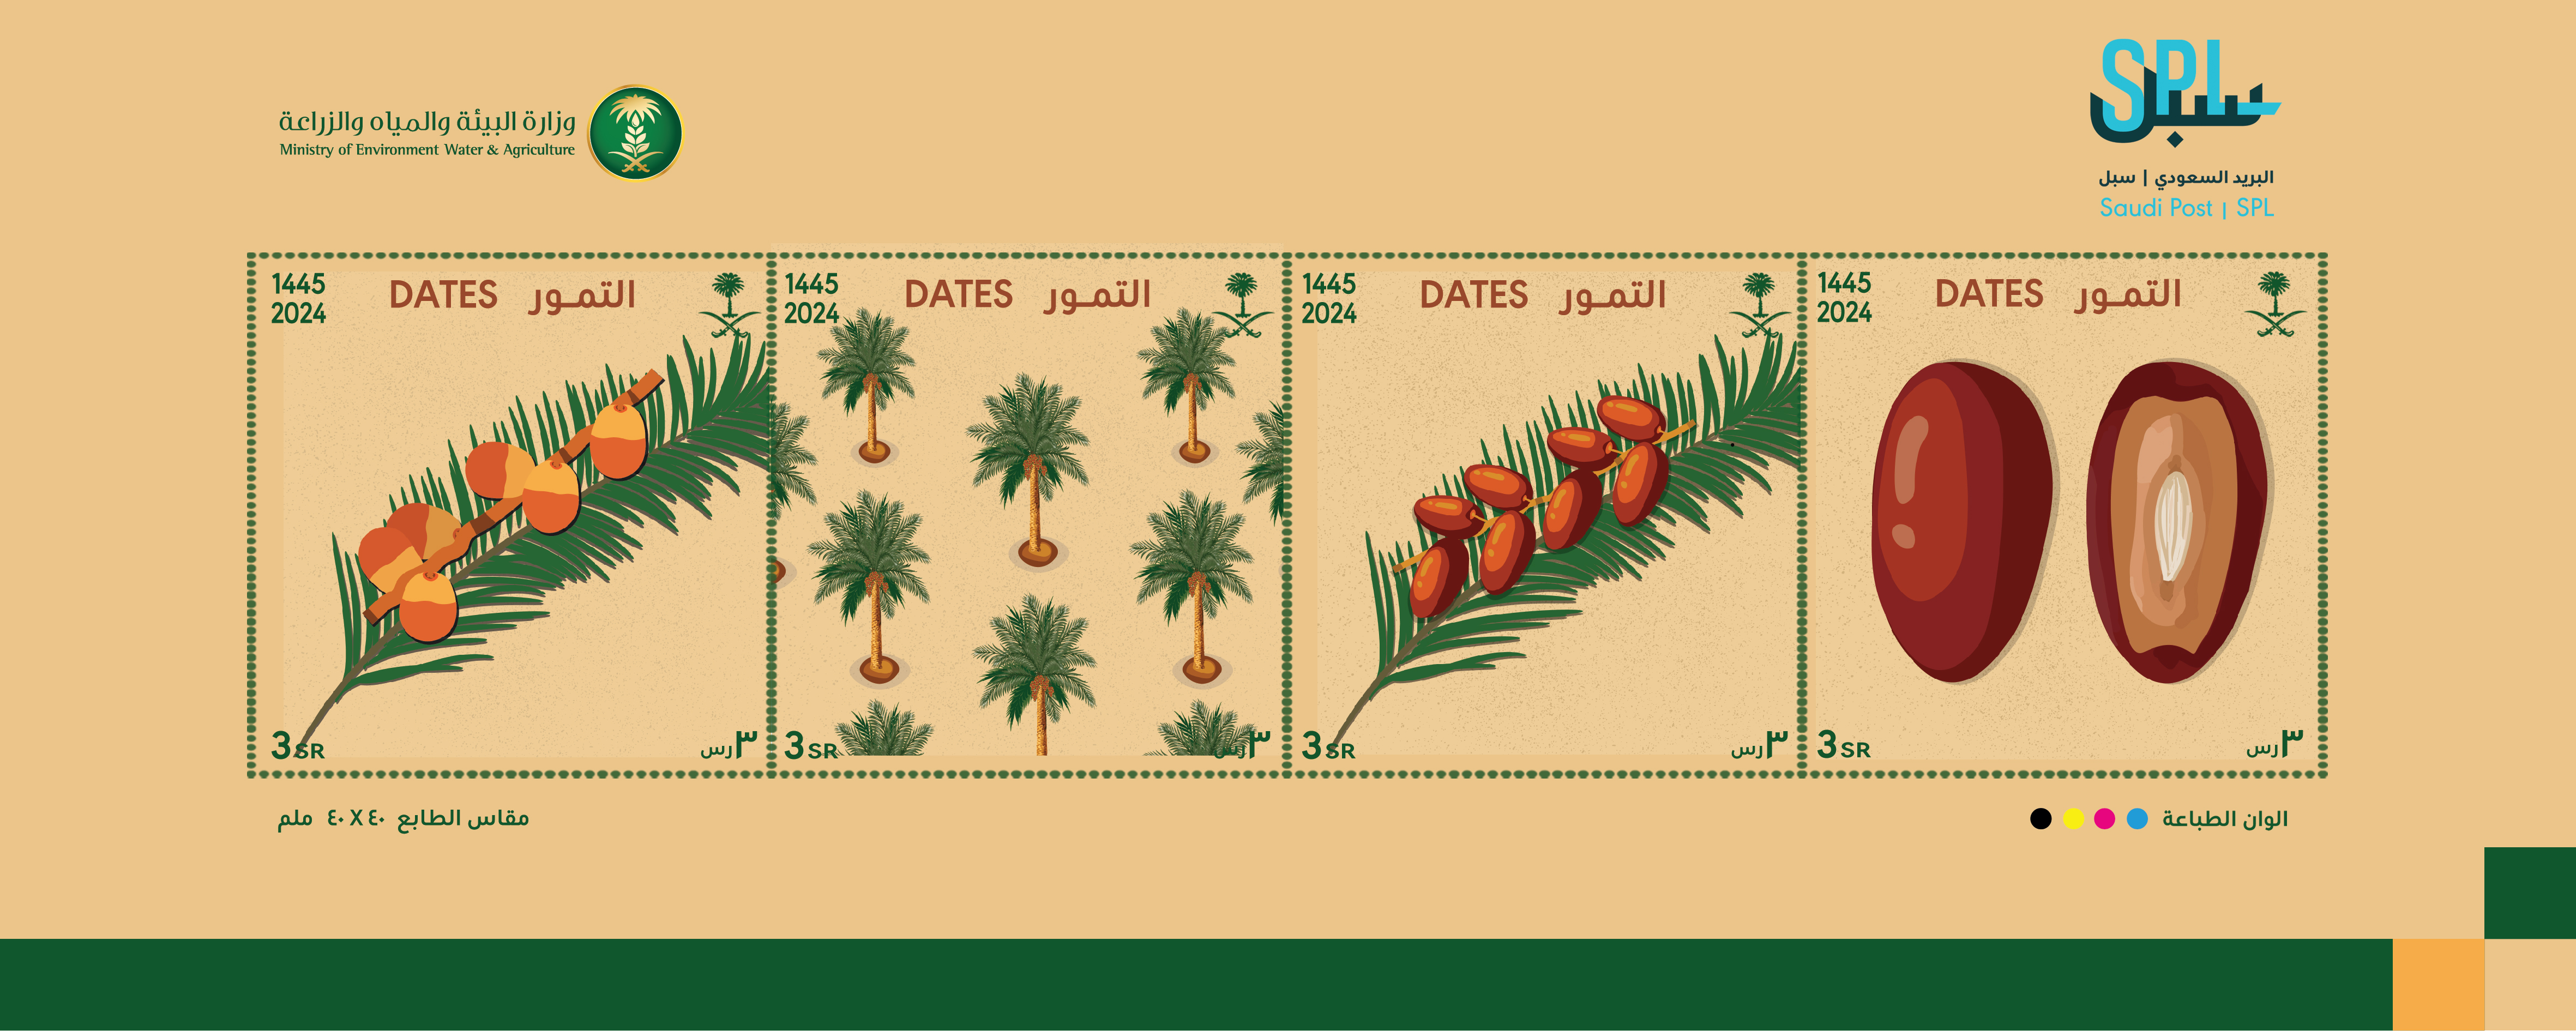 البريد السعودي | سبل يصدر طابعاً بريدياً عن قطاع النخيل والتمور في المملكة  